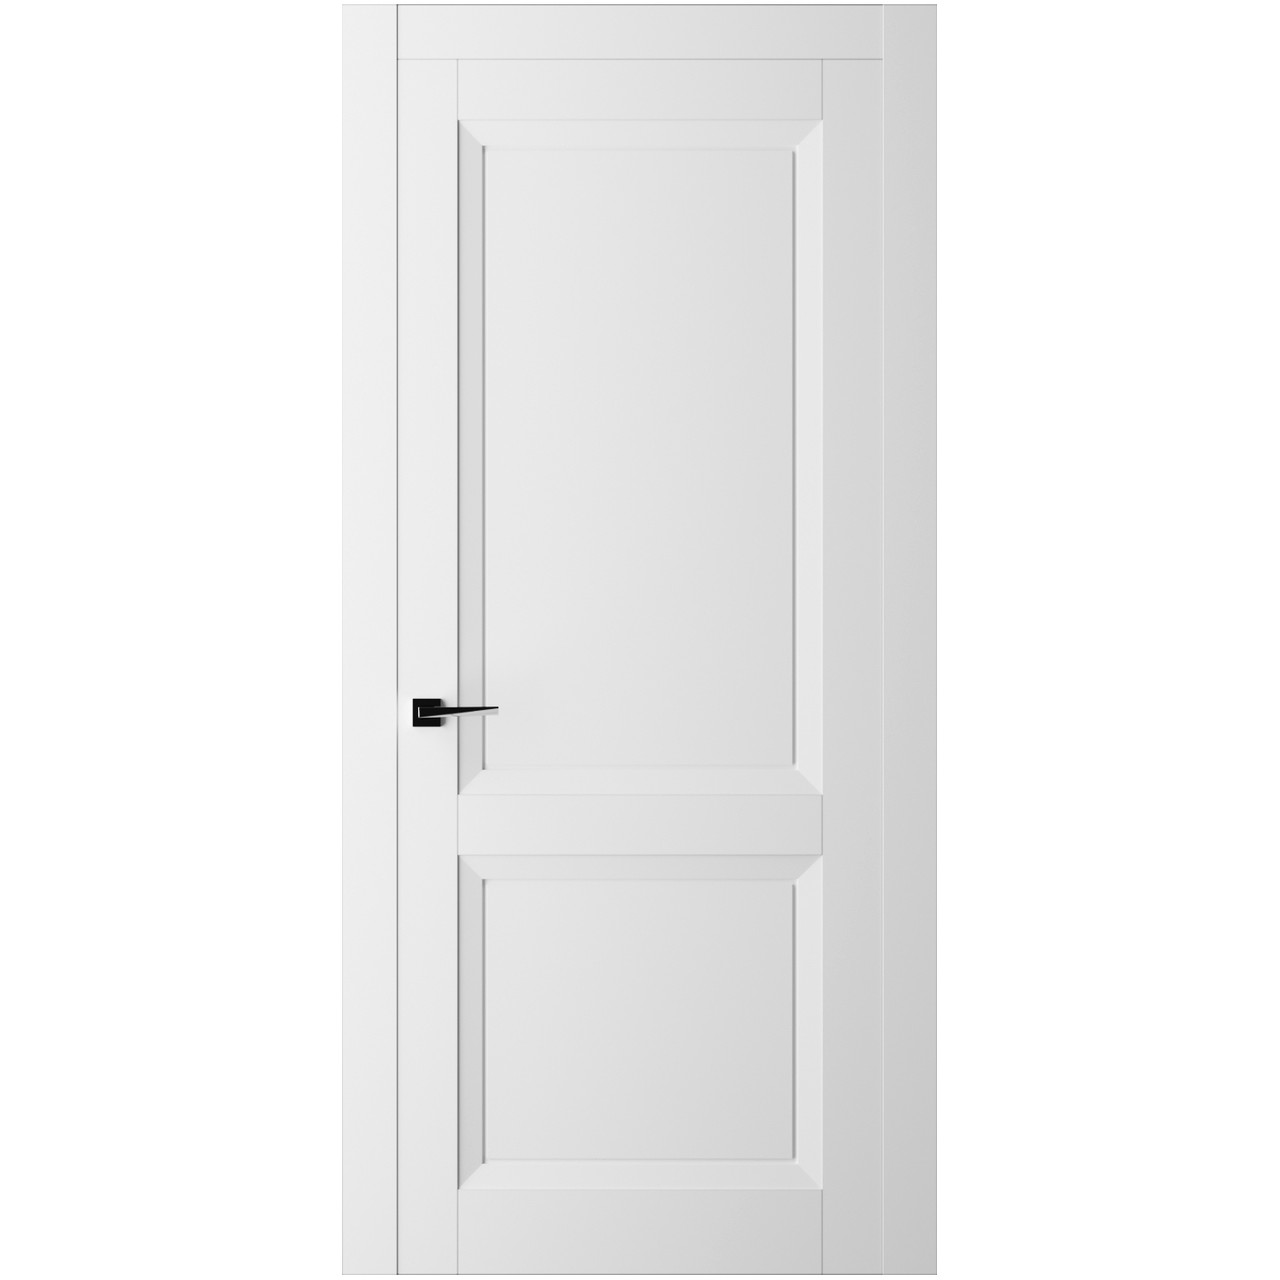 Дверь межкомнатная Ликорн Френч Кат ДКФКГ.2 2000*700*40мм (без замков и петель, с телескопической коробкой и